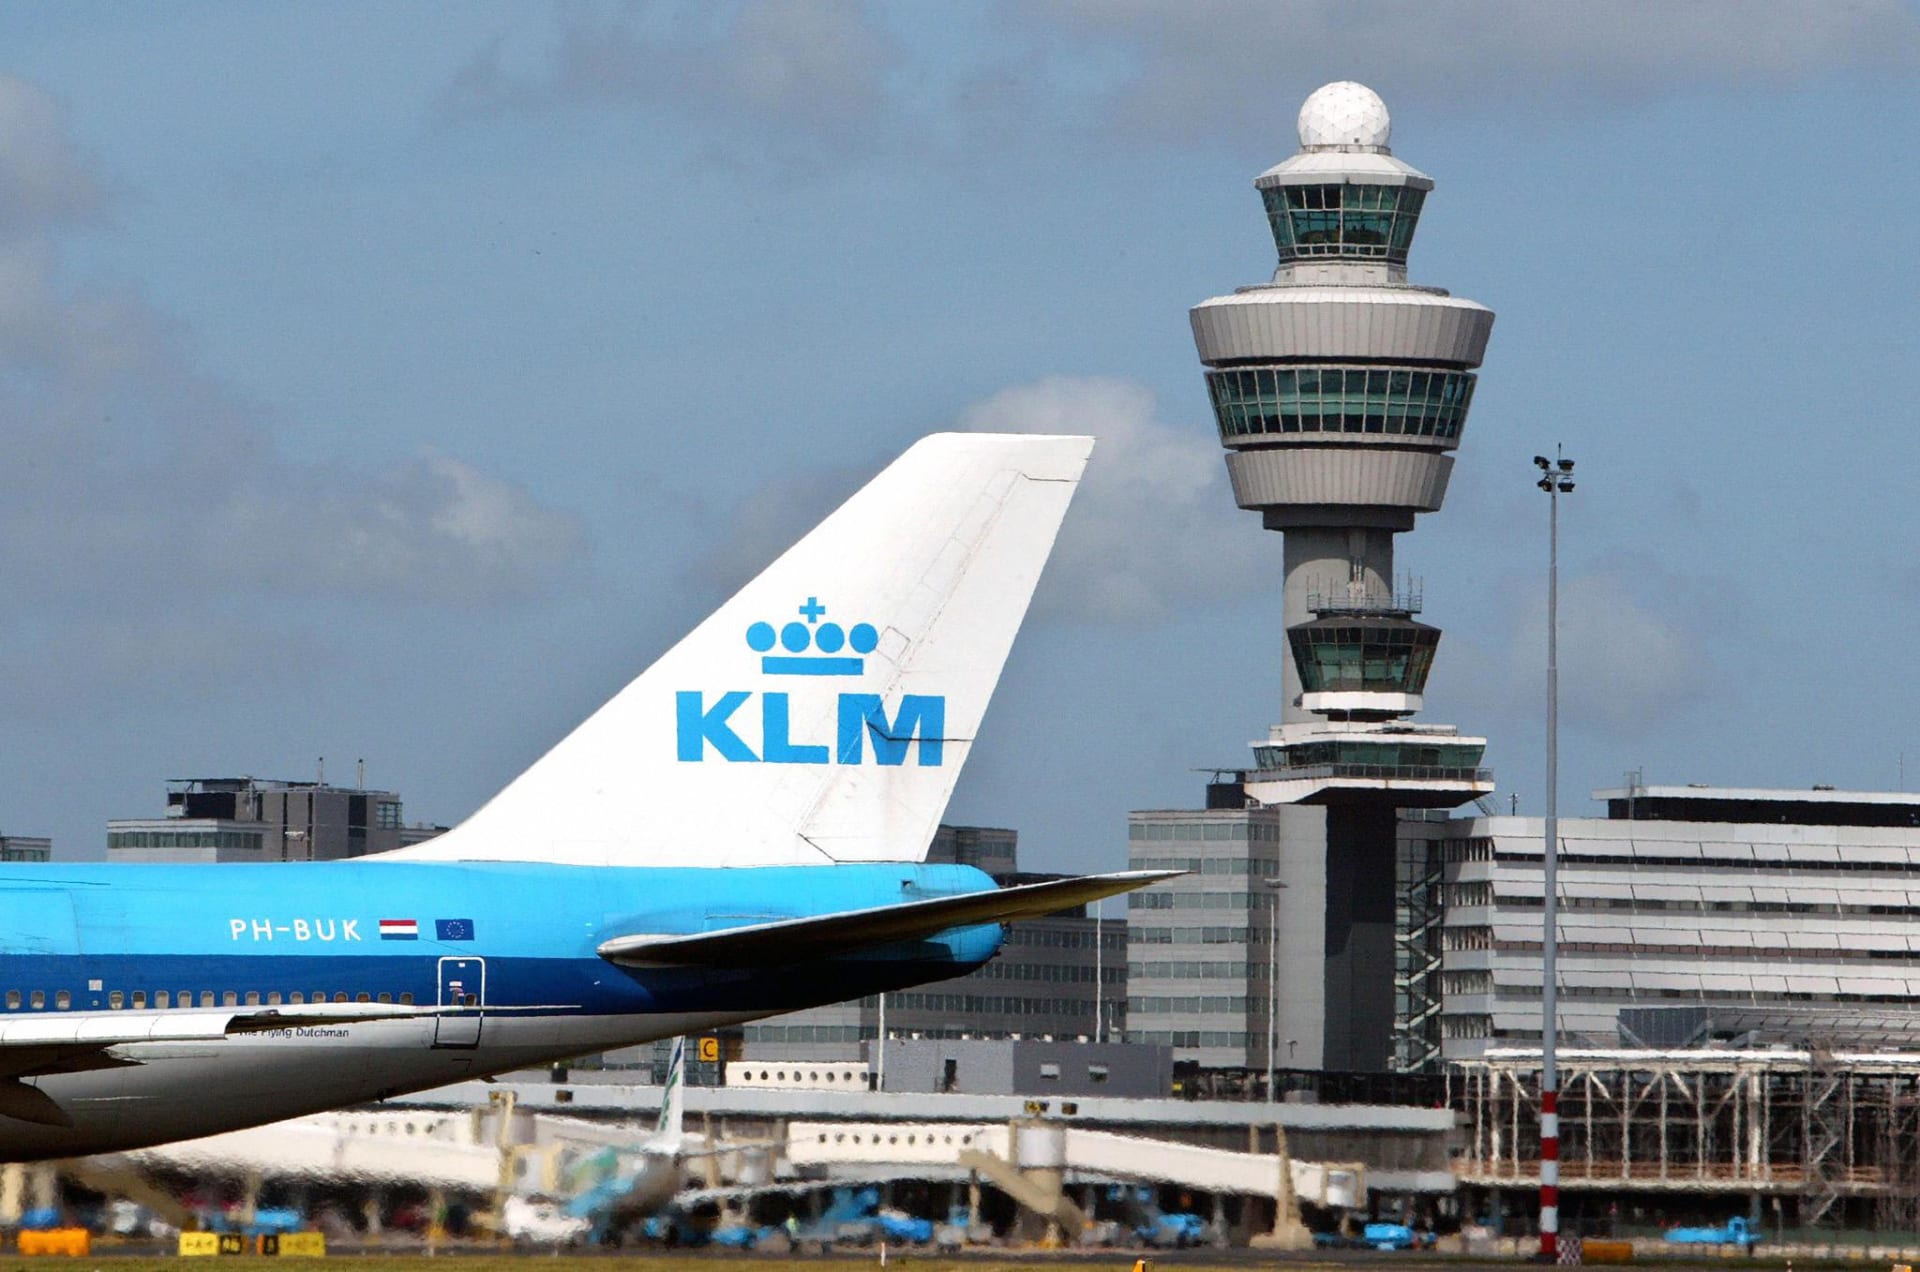 مطار سخيبول أمستردام يتّجه إلى حظر الطائرات الخاصة ربما